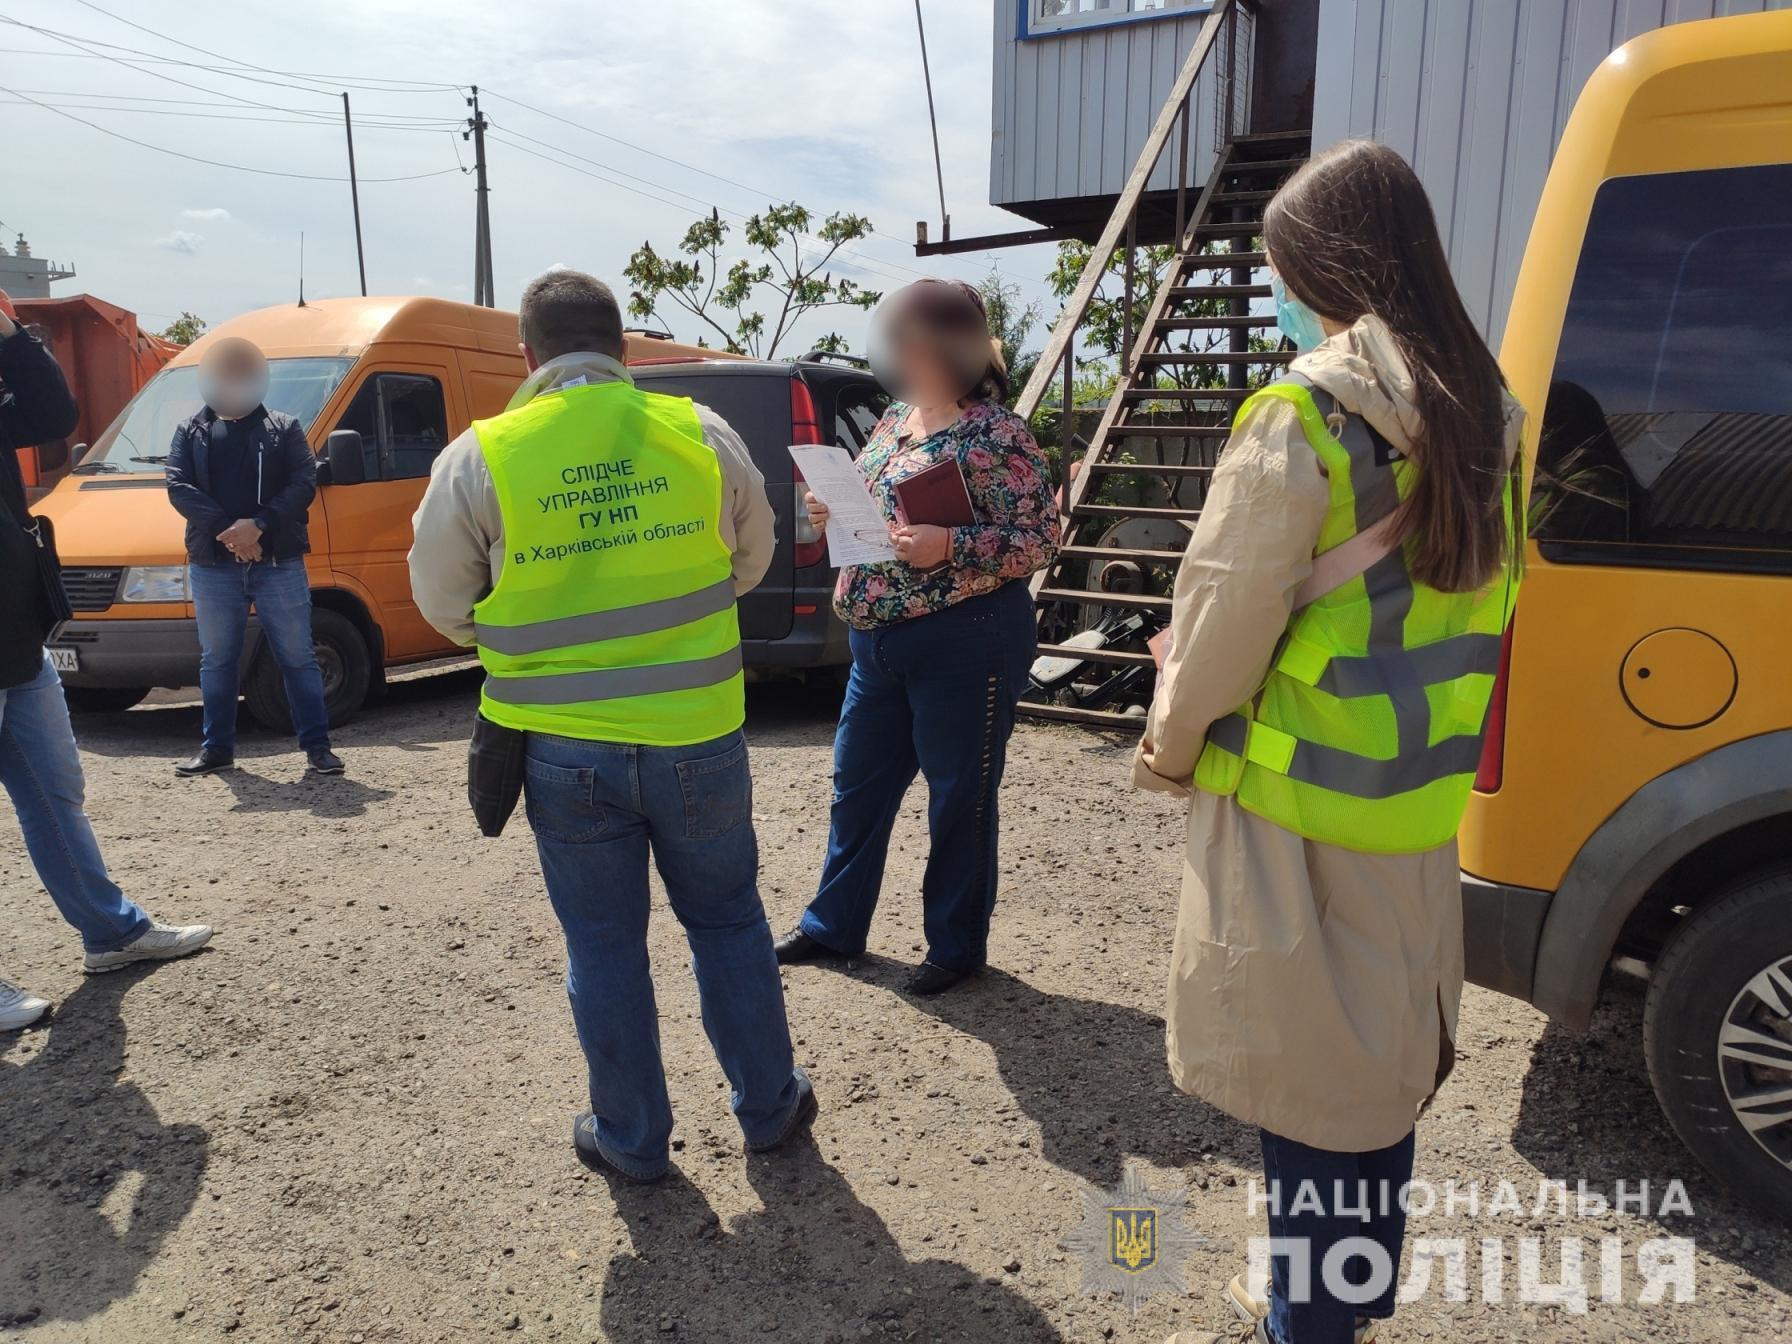 Двом фермерам, які вербували людей для трудової експлуатації на Харківщині, слідчі повідомили про підозру